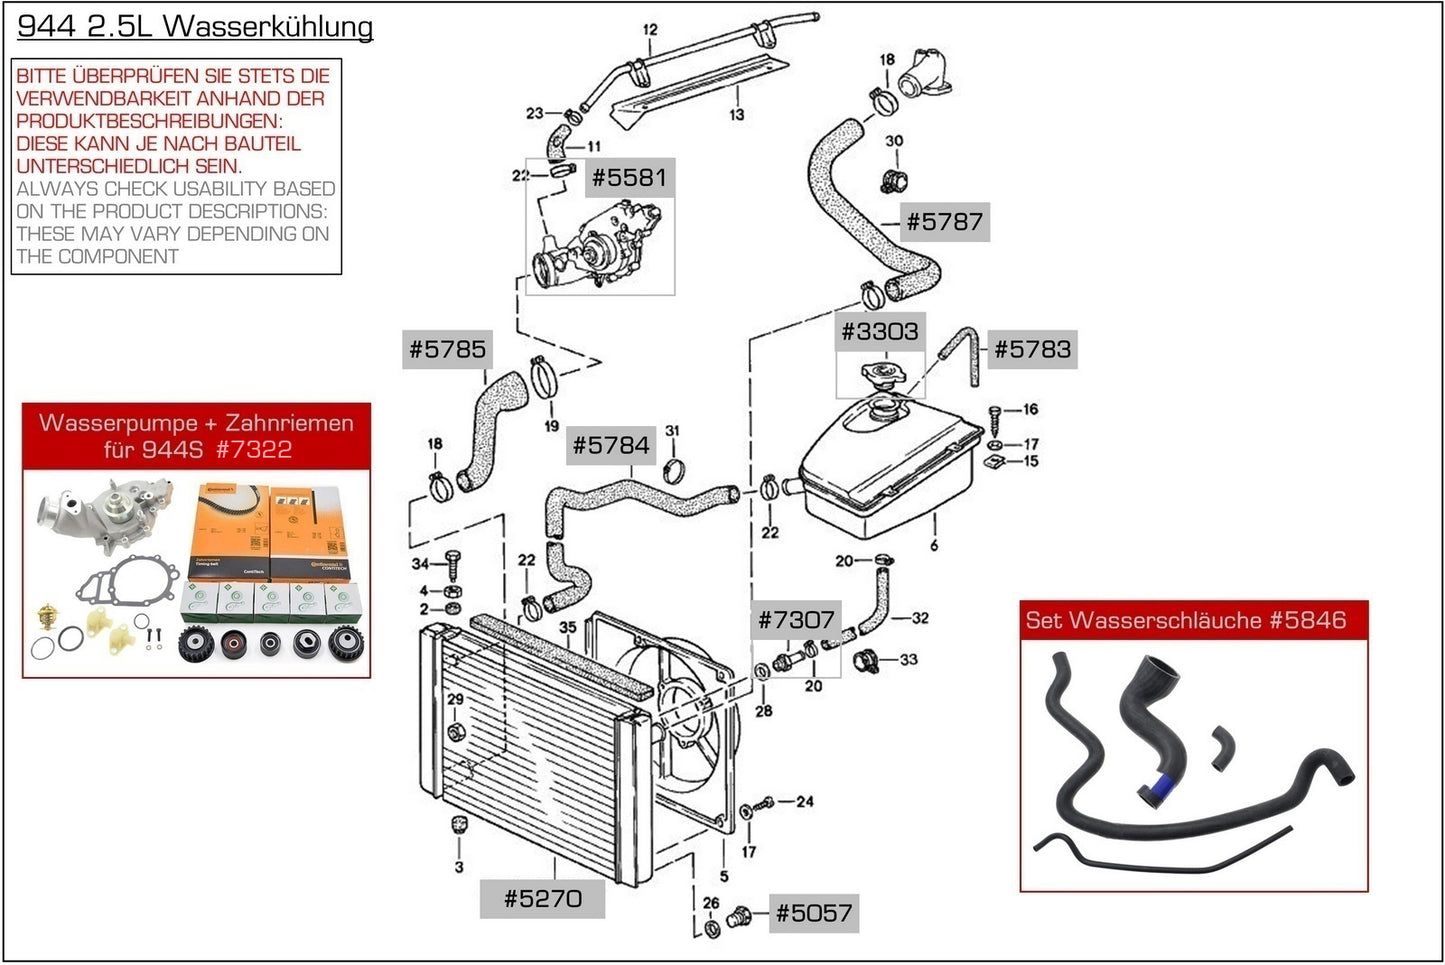 Tubo radiatore per pompa acqua Porsche 944 '82-'85 INFERIORE